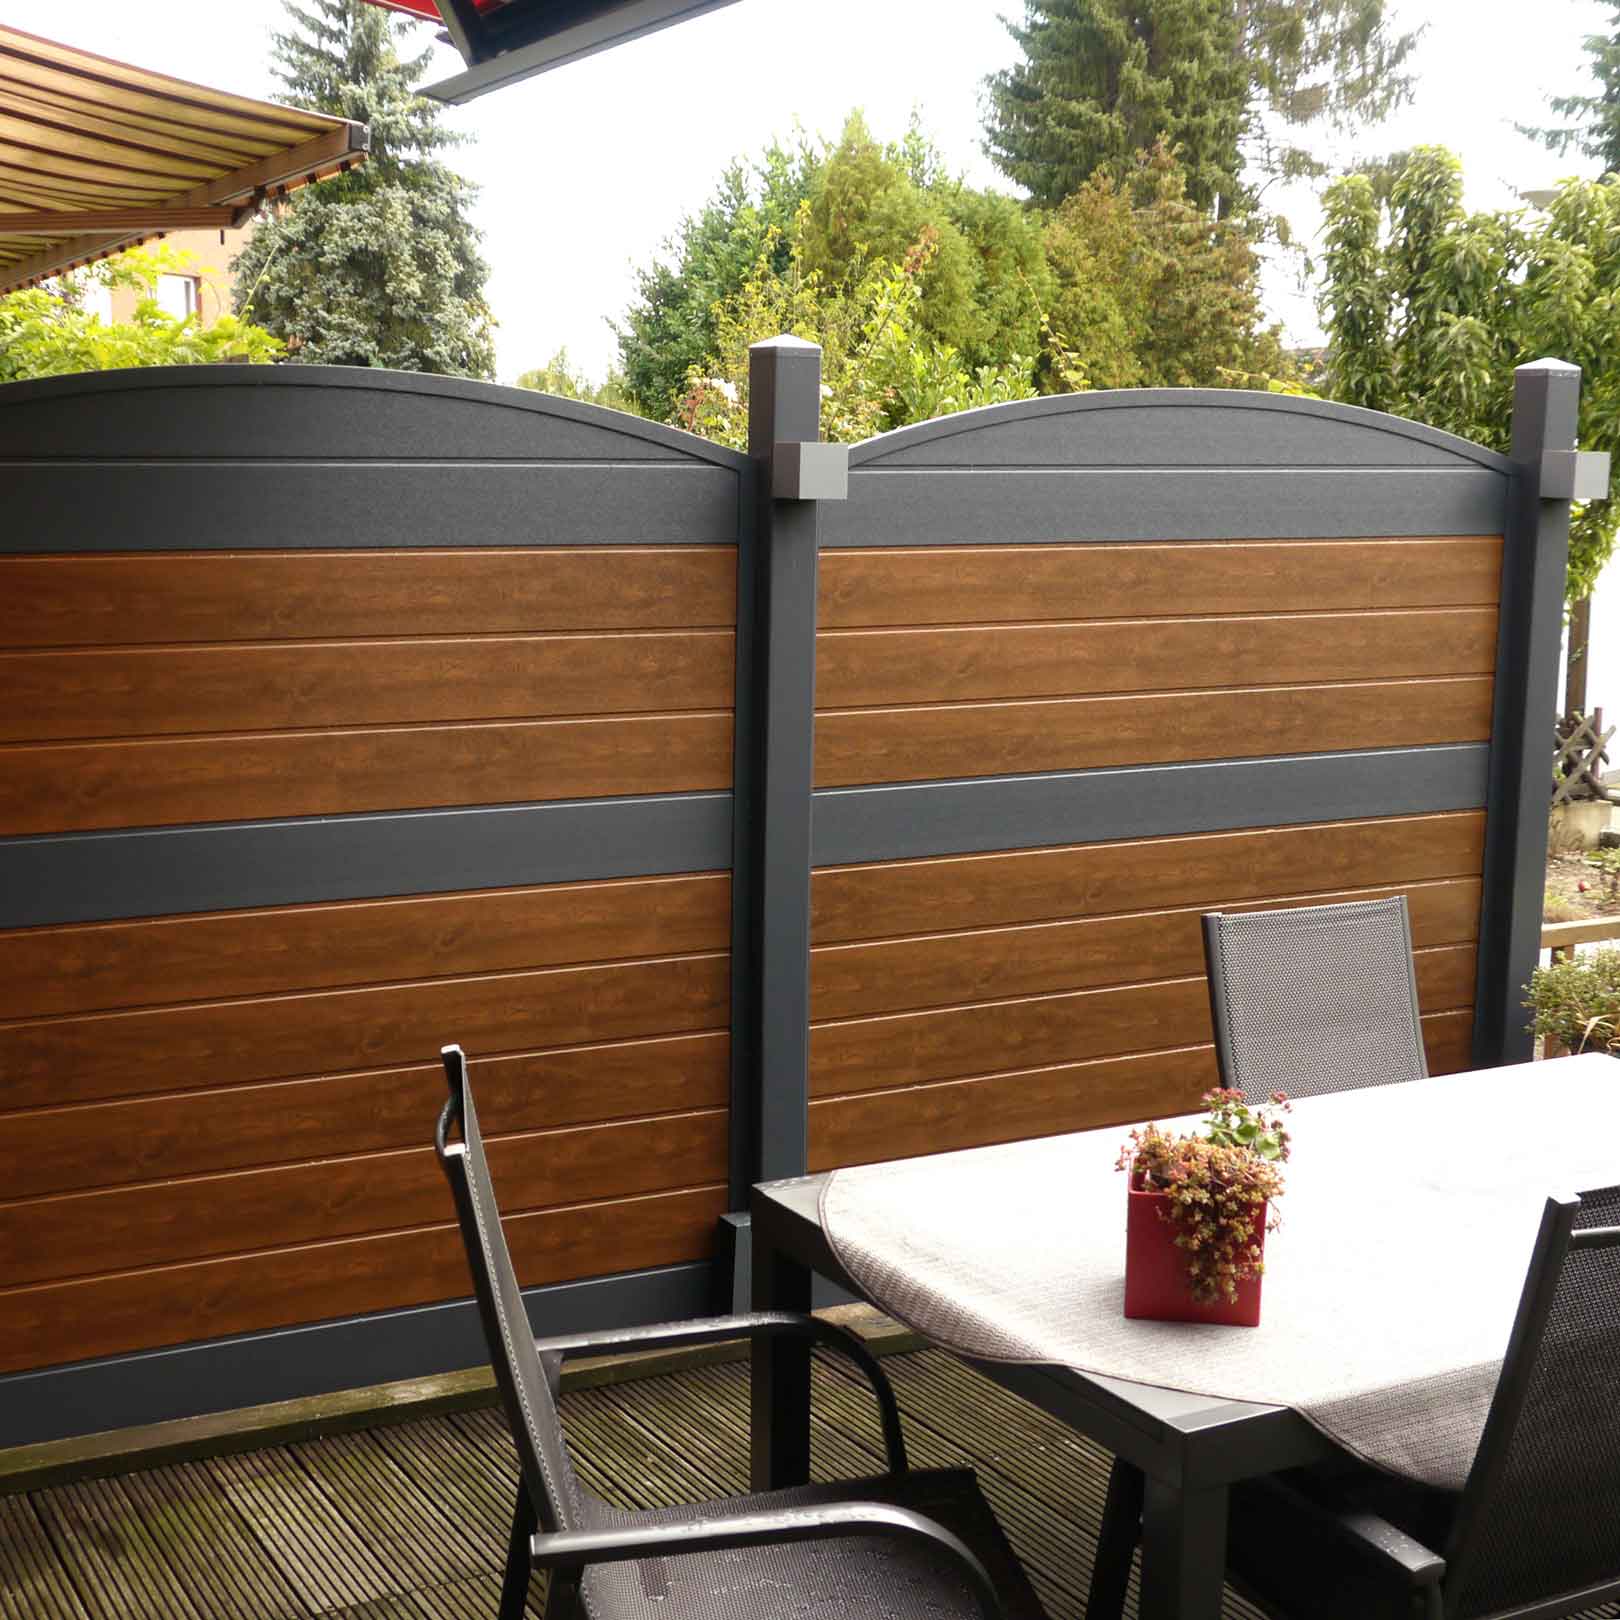 Sichtschutzzaun aus Kunststoff PVC in Nussbaum und Anthrazit auf einer Terrasse